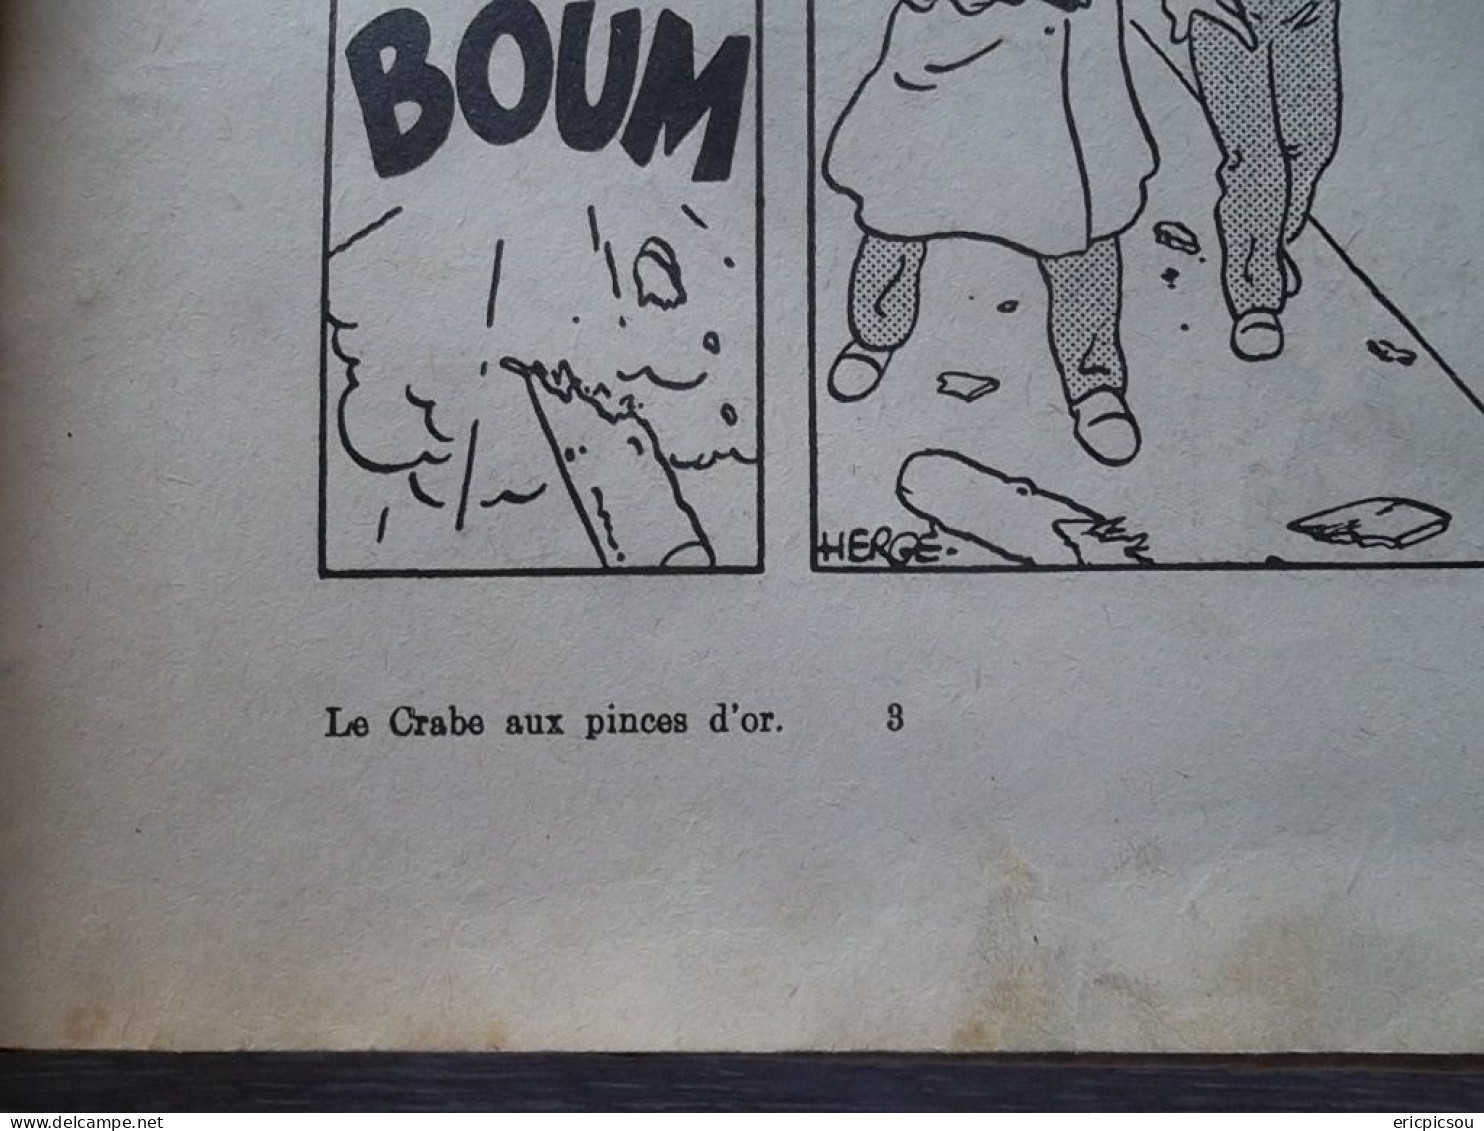 Le Crabe Aux Pinces D'Or E.O. A13 1941 . Le Plus Rare ! Pinces en Bas ! ( Lire )